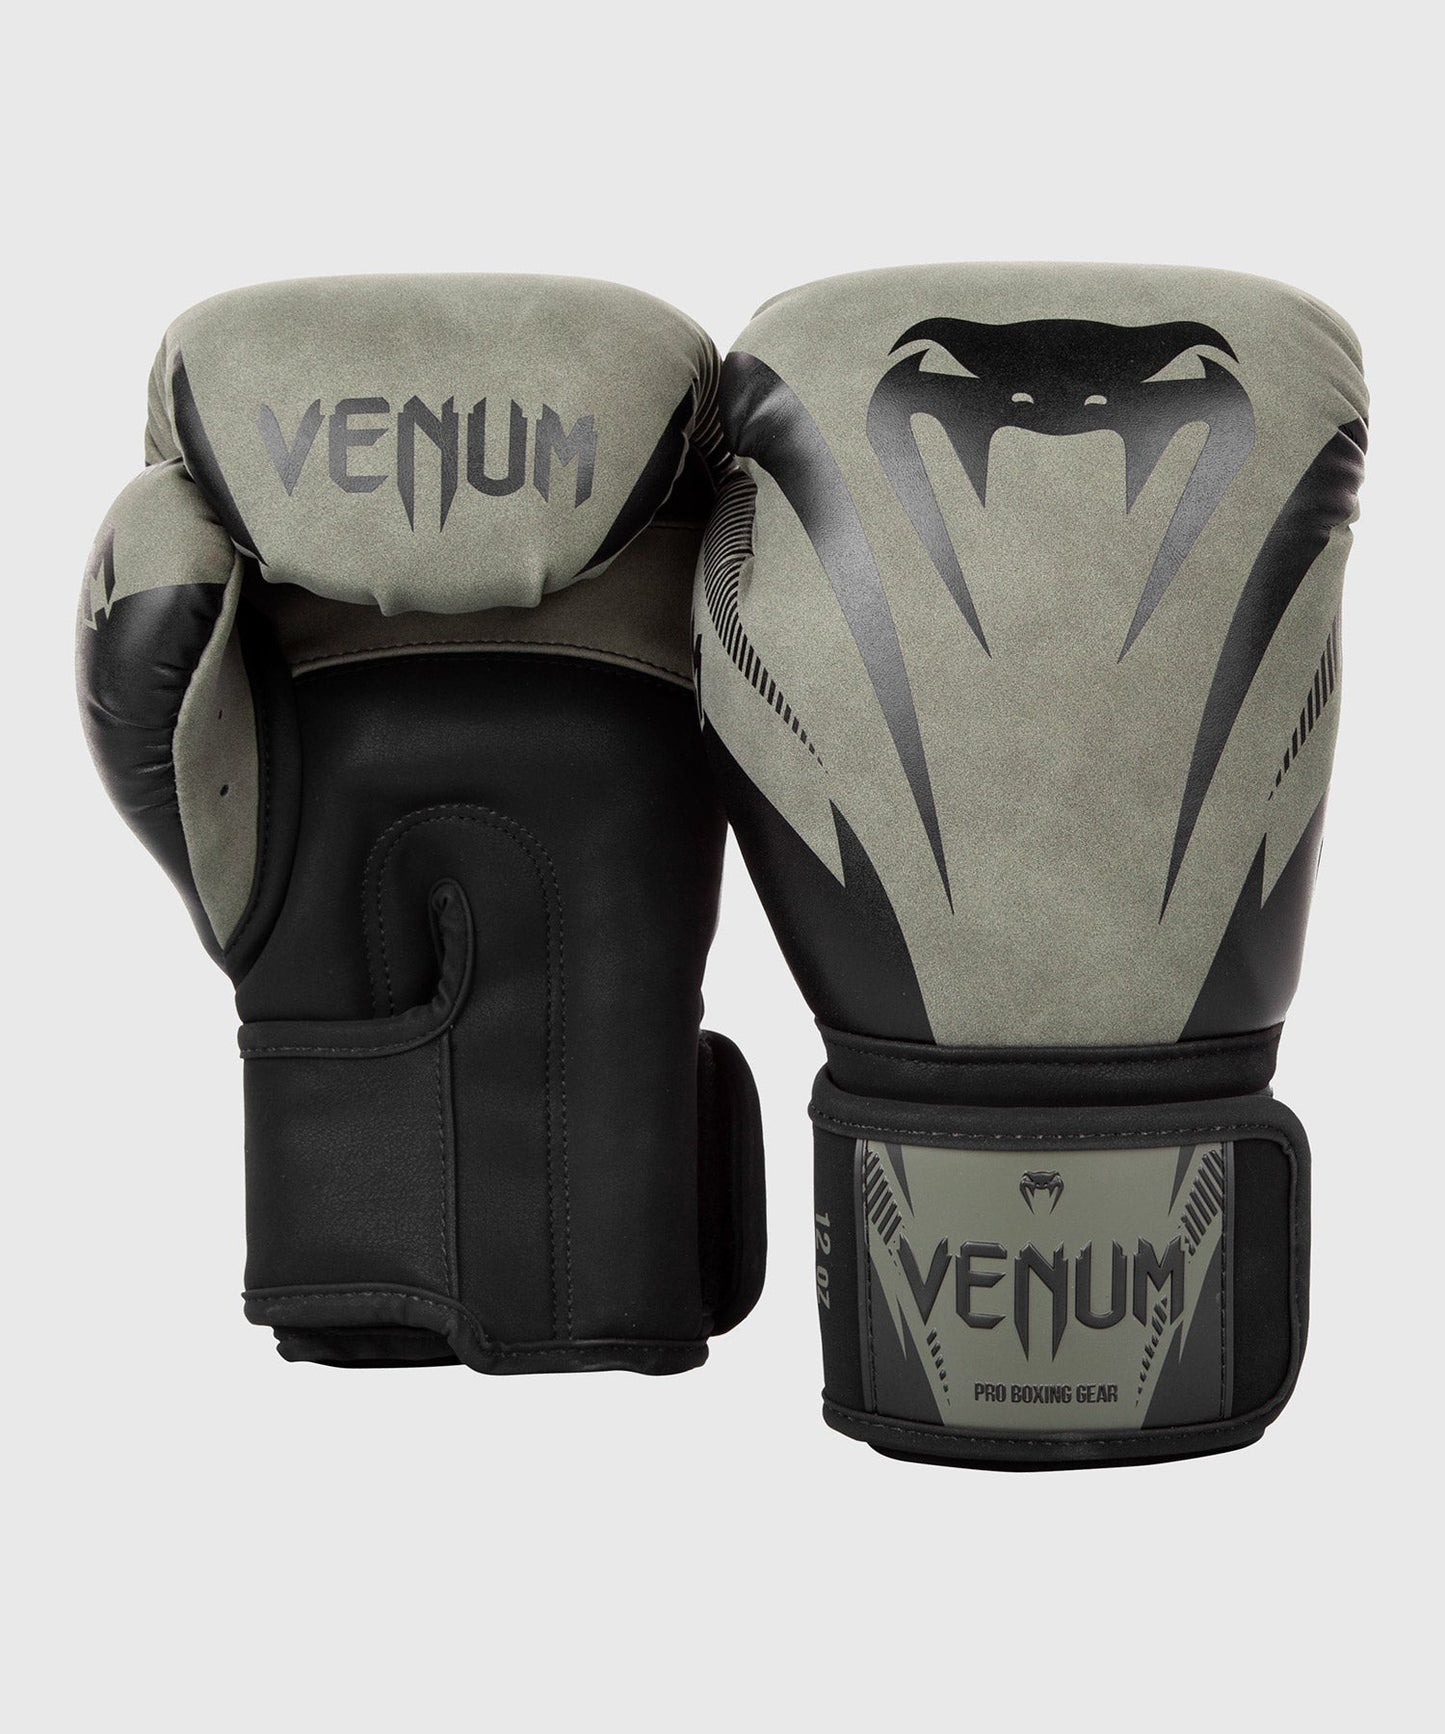 Venum Impact Boxing Gloves - Khaki/Black